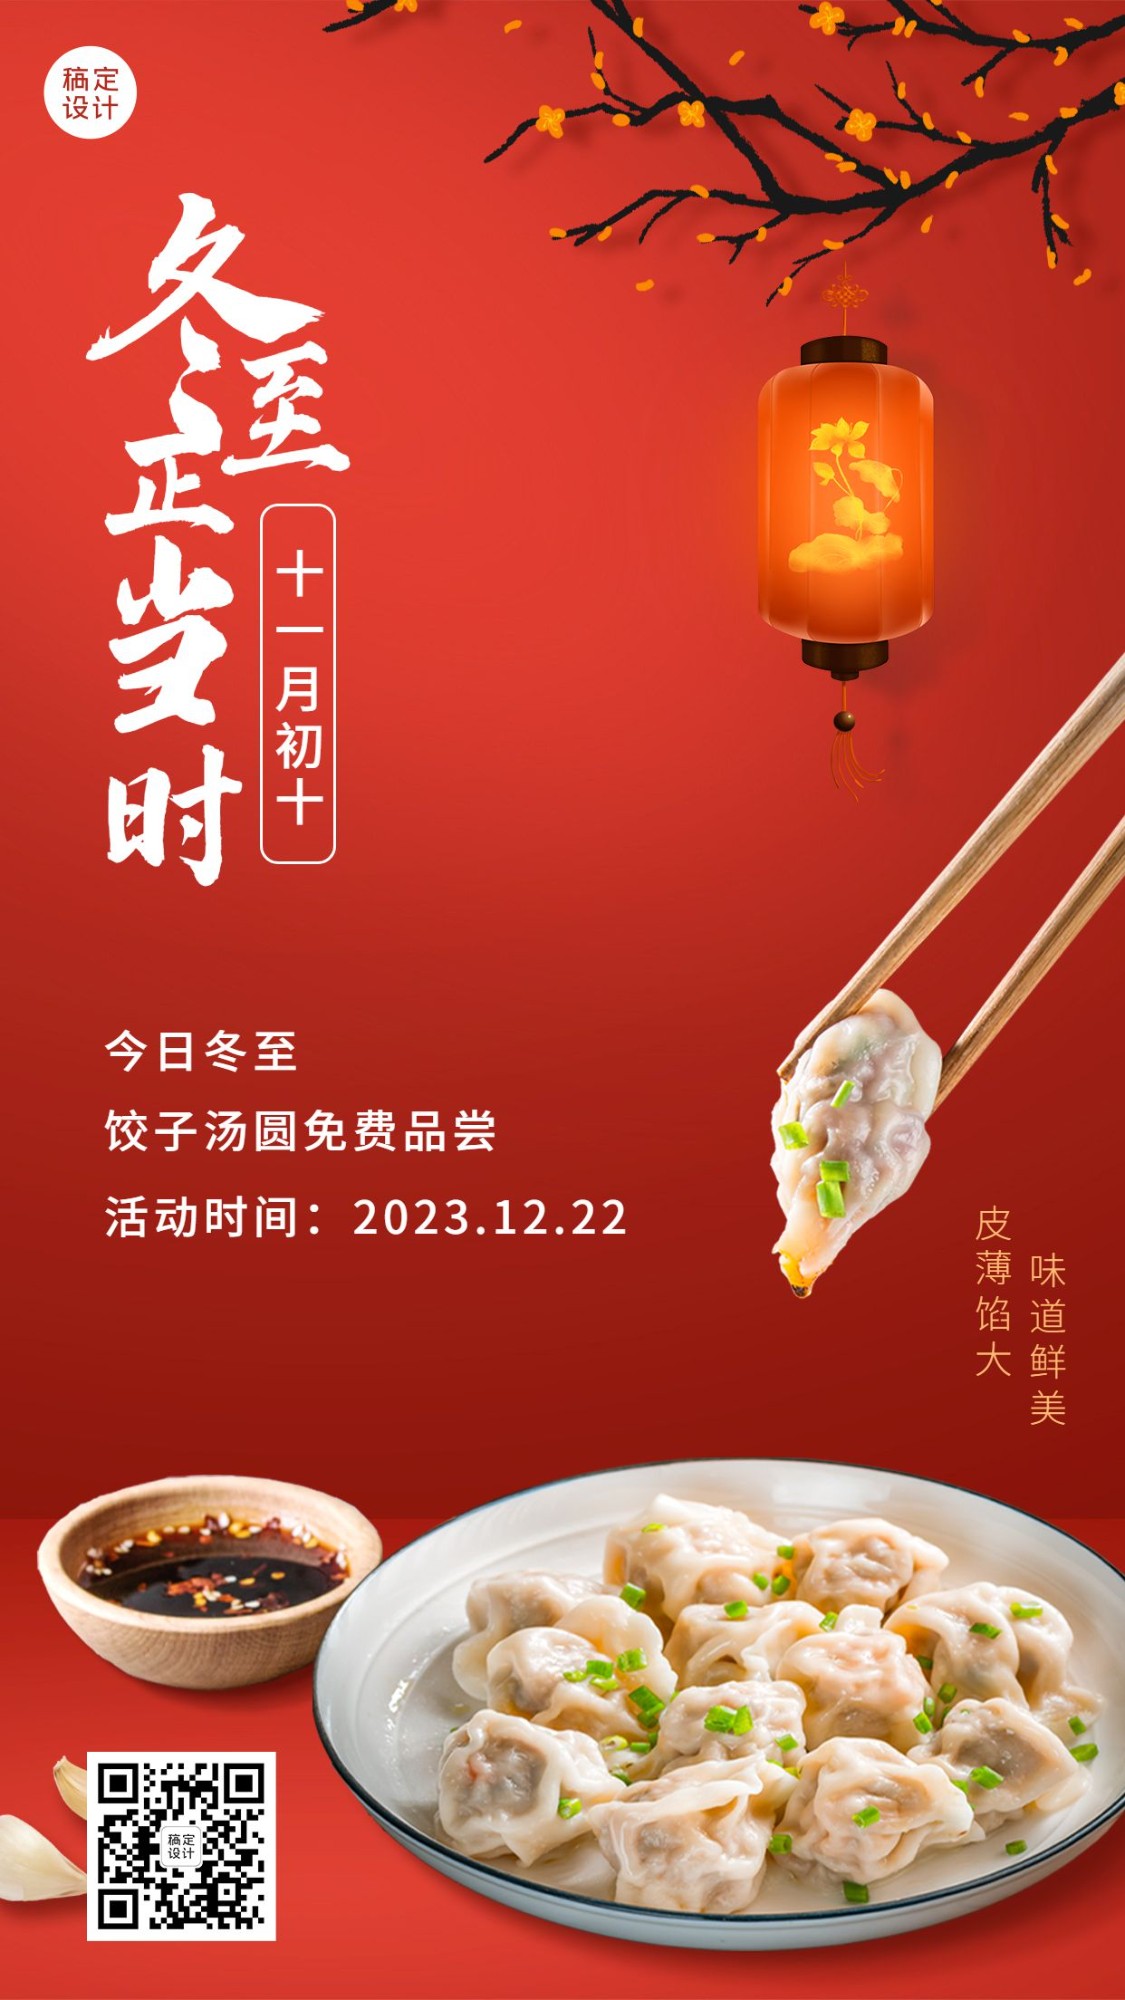 冬至节气节日营销促销餐饮手机海报